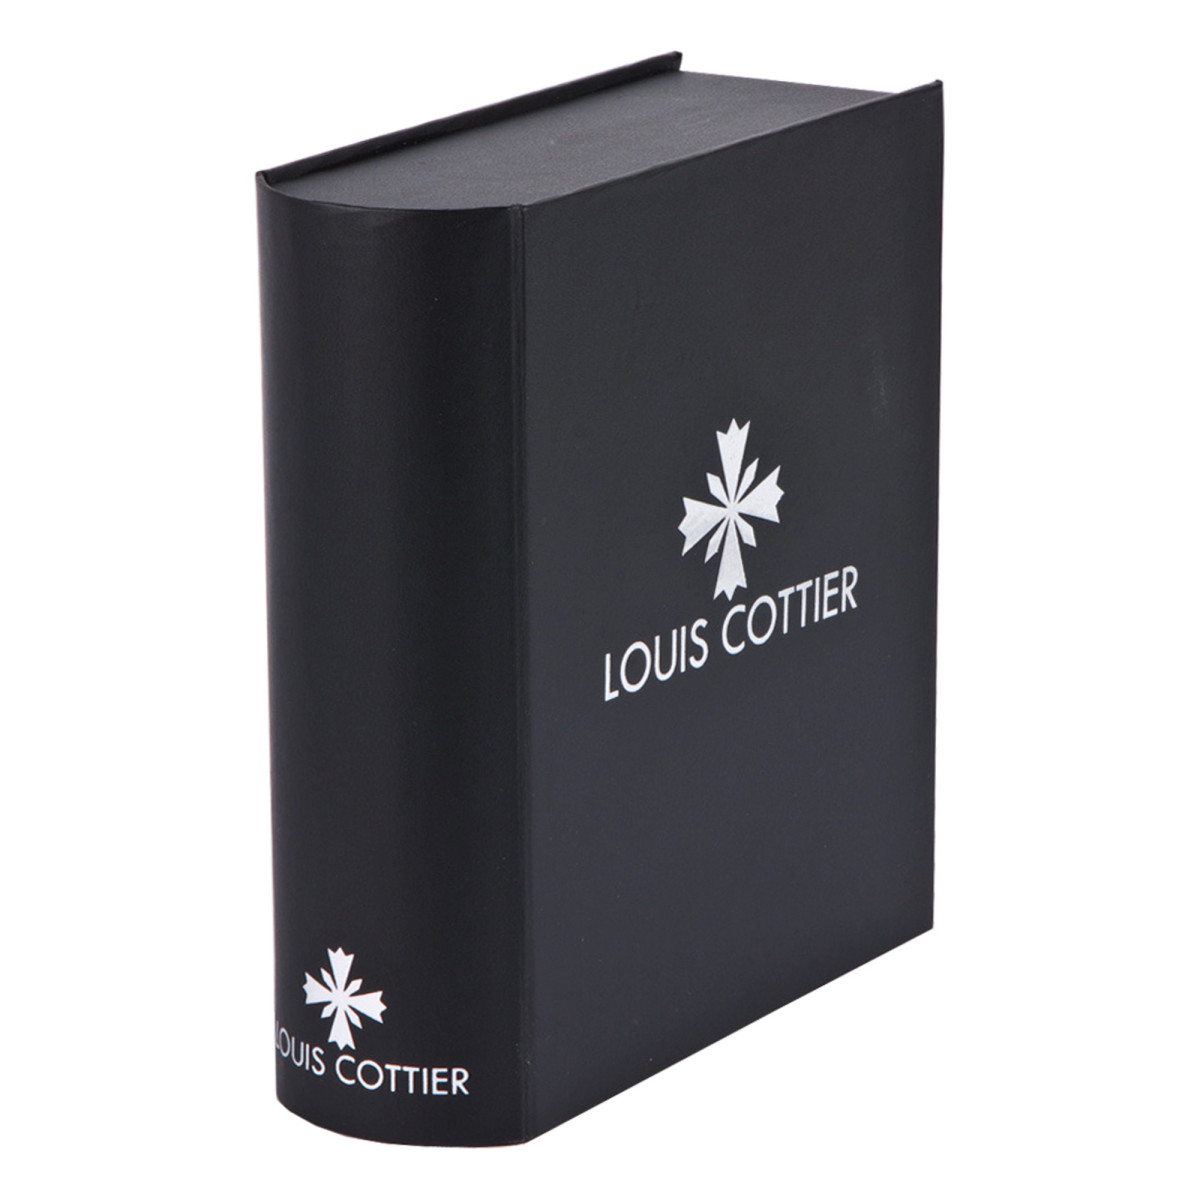 Montre Louis Cottier AIRFLY Automatique 44 mm Noir boitier noir - Bracelet noir - HB3231C1BM2